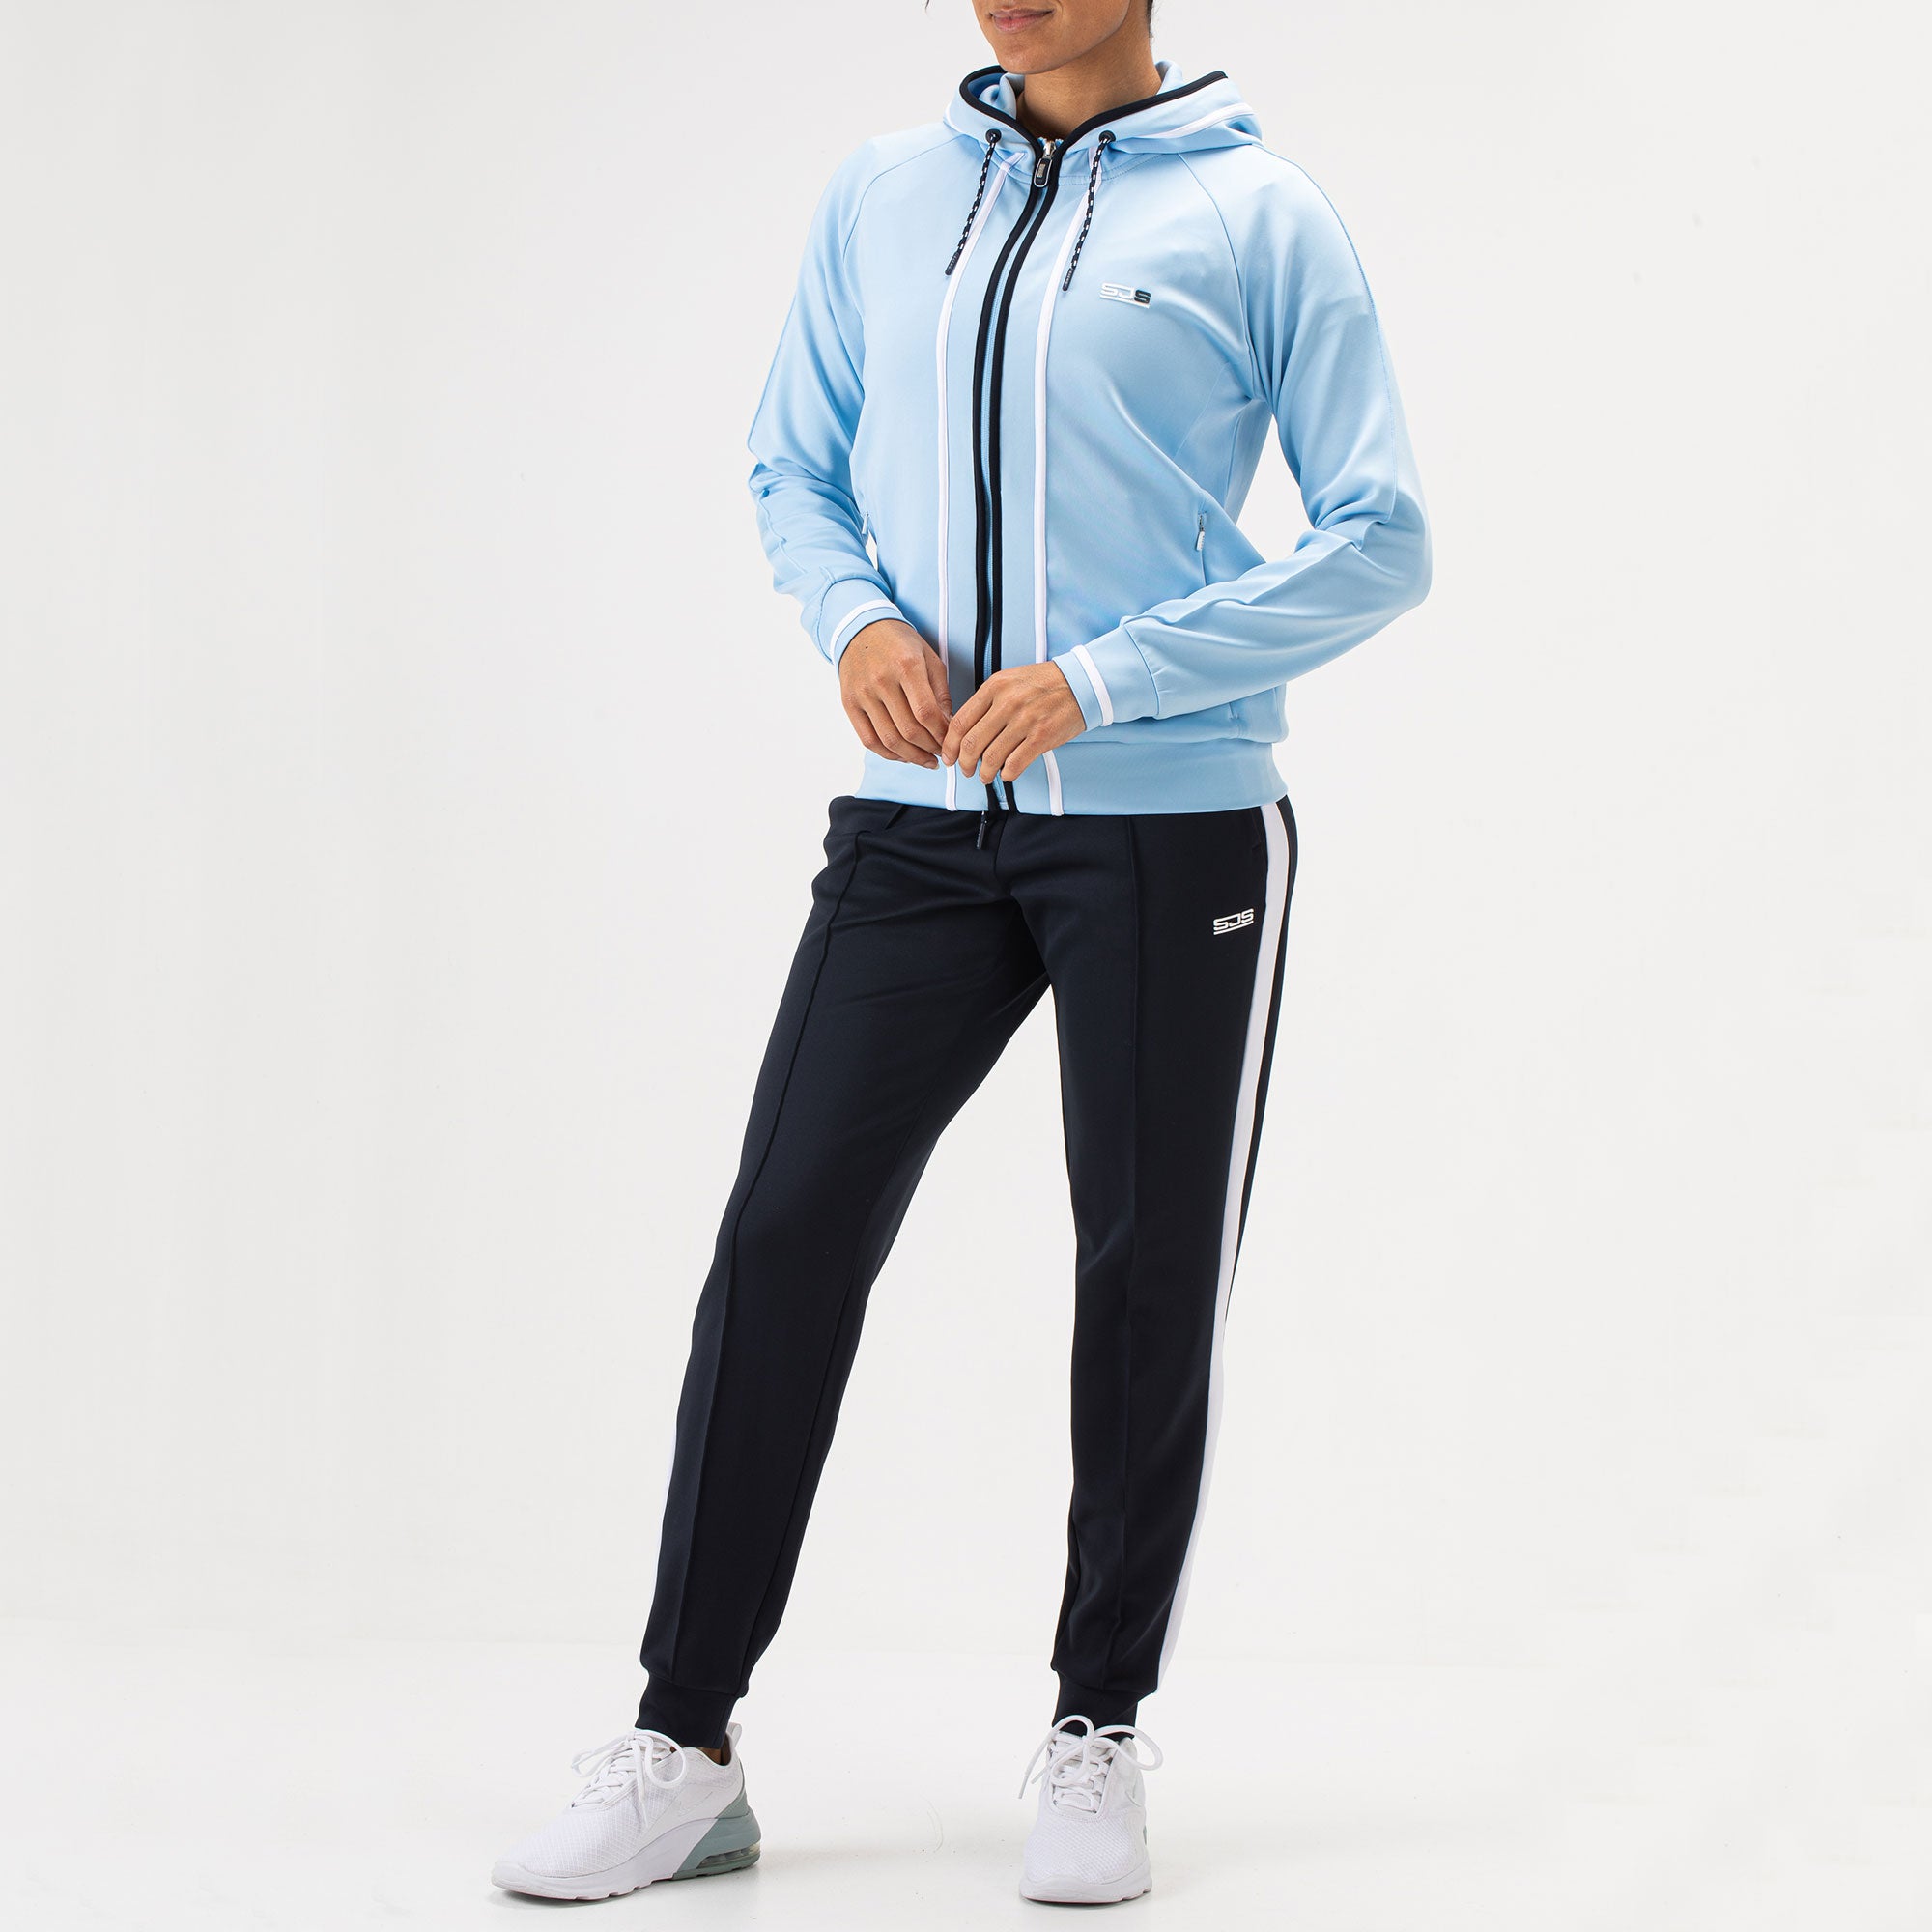 Sjeng Sports Fathia Women's Hooded Tennis Jacket - Blue (3)